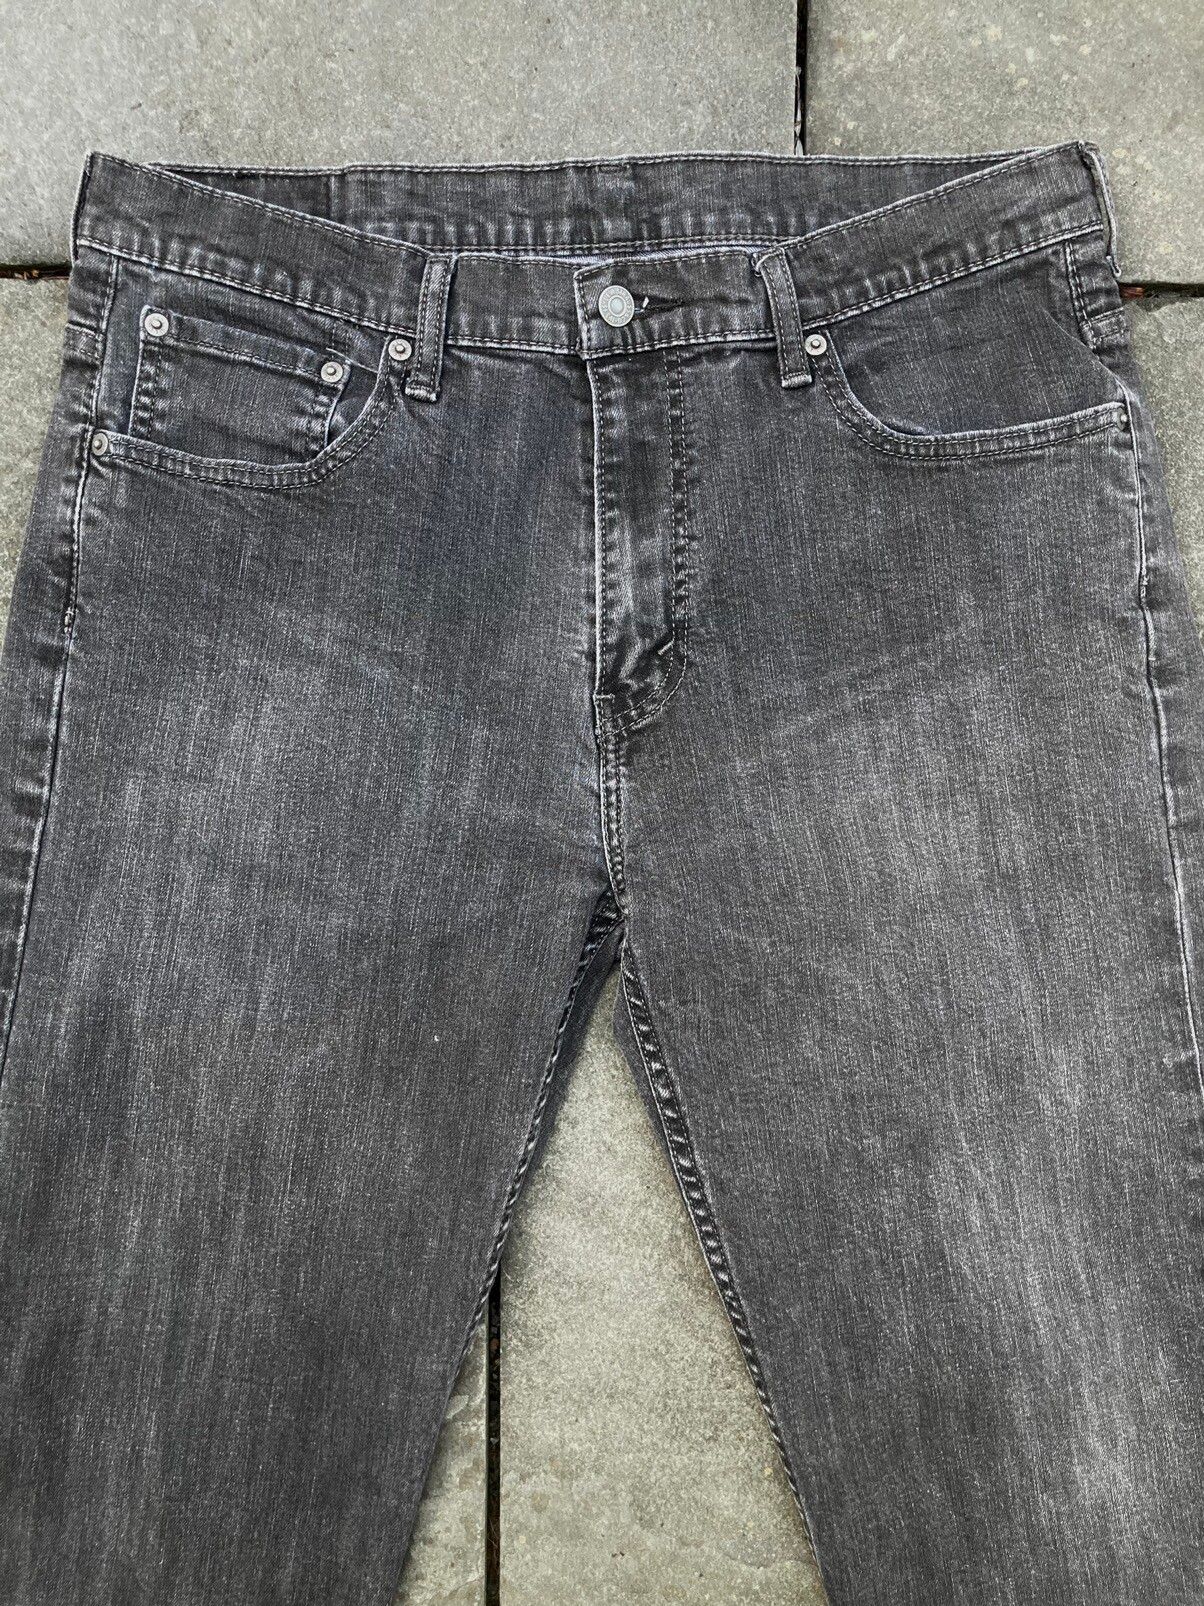 Levi's Levis 569 Grey Wash Denim Jeans Size US 34 / EU 50 - 4 Thumbnail